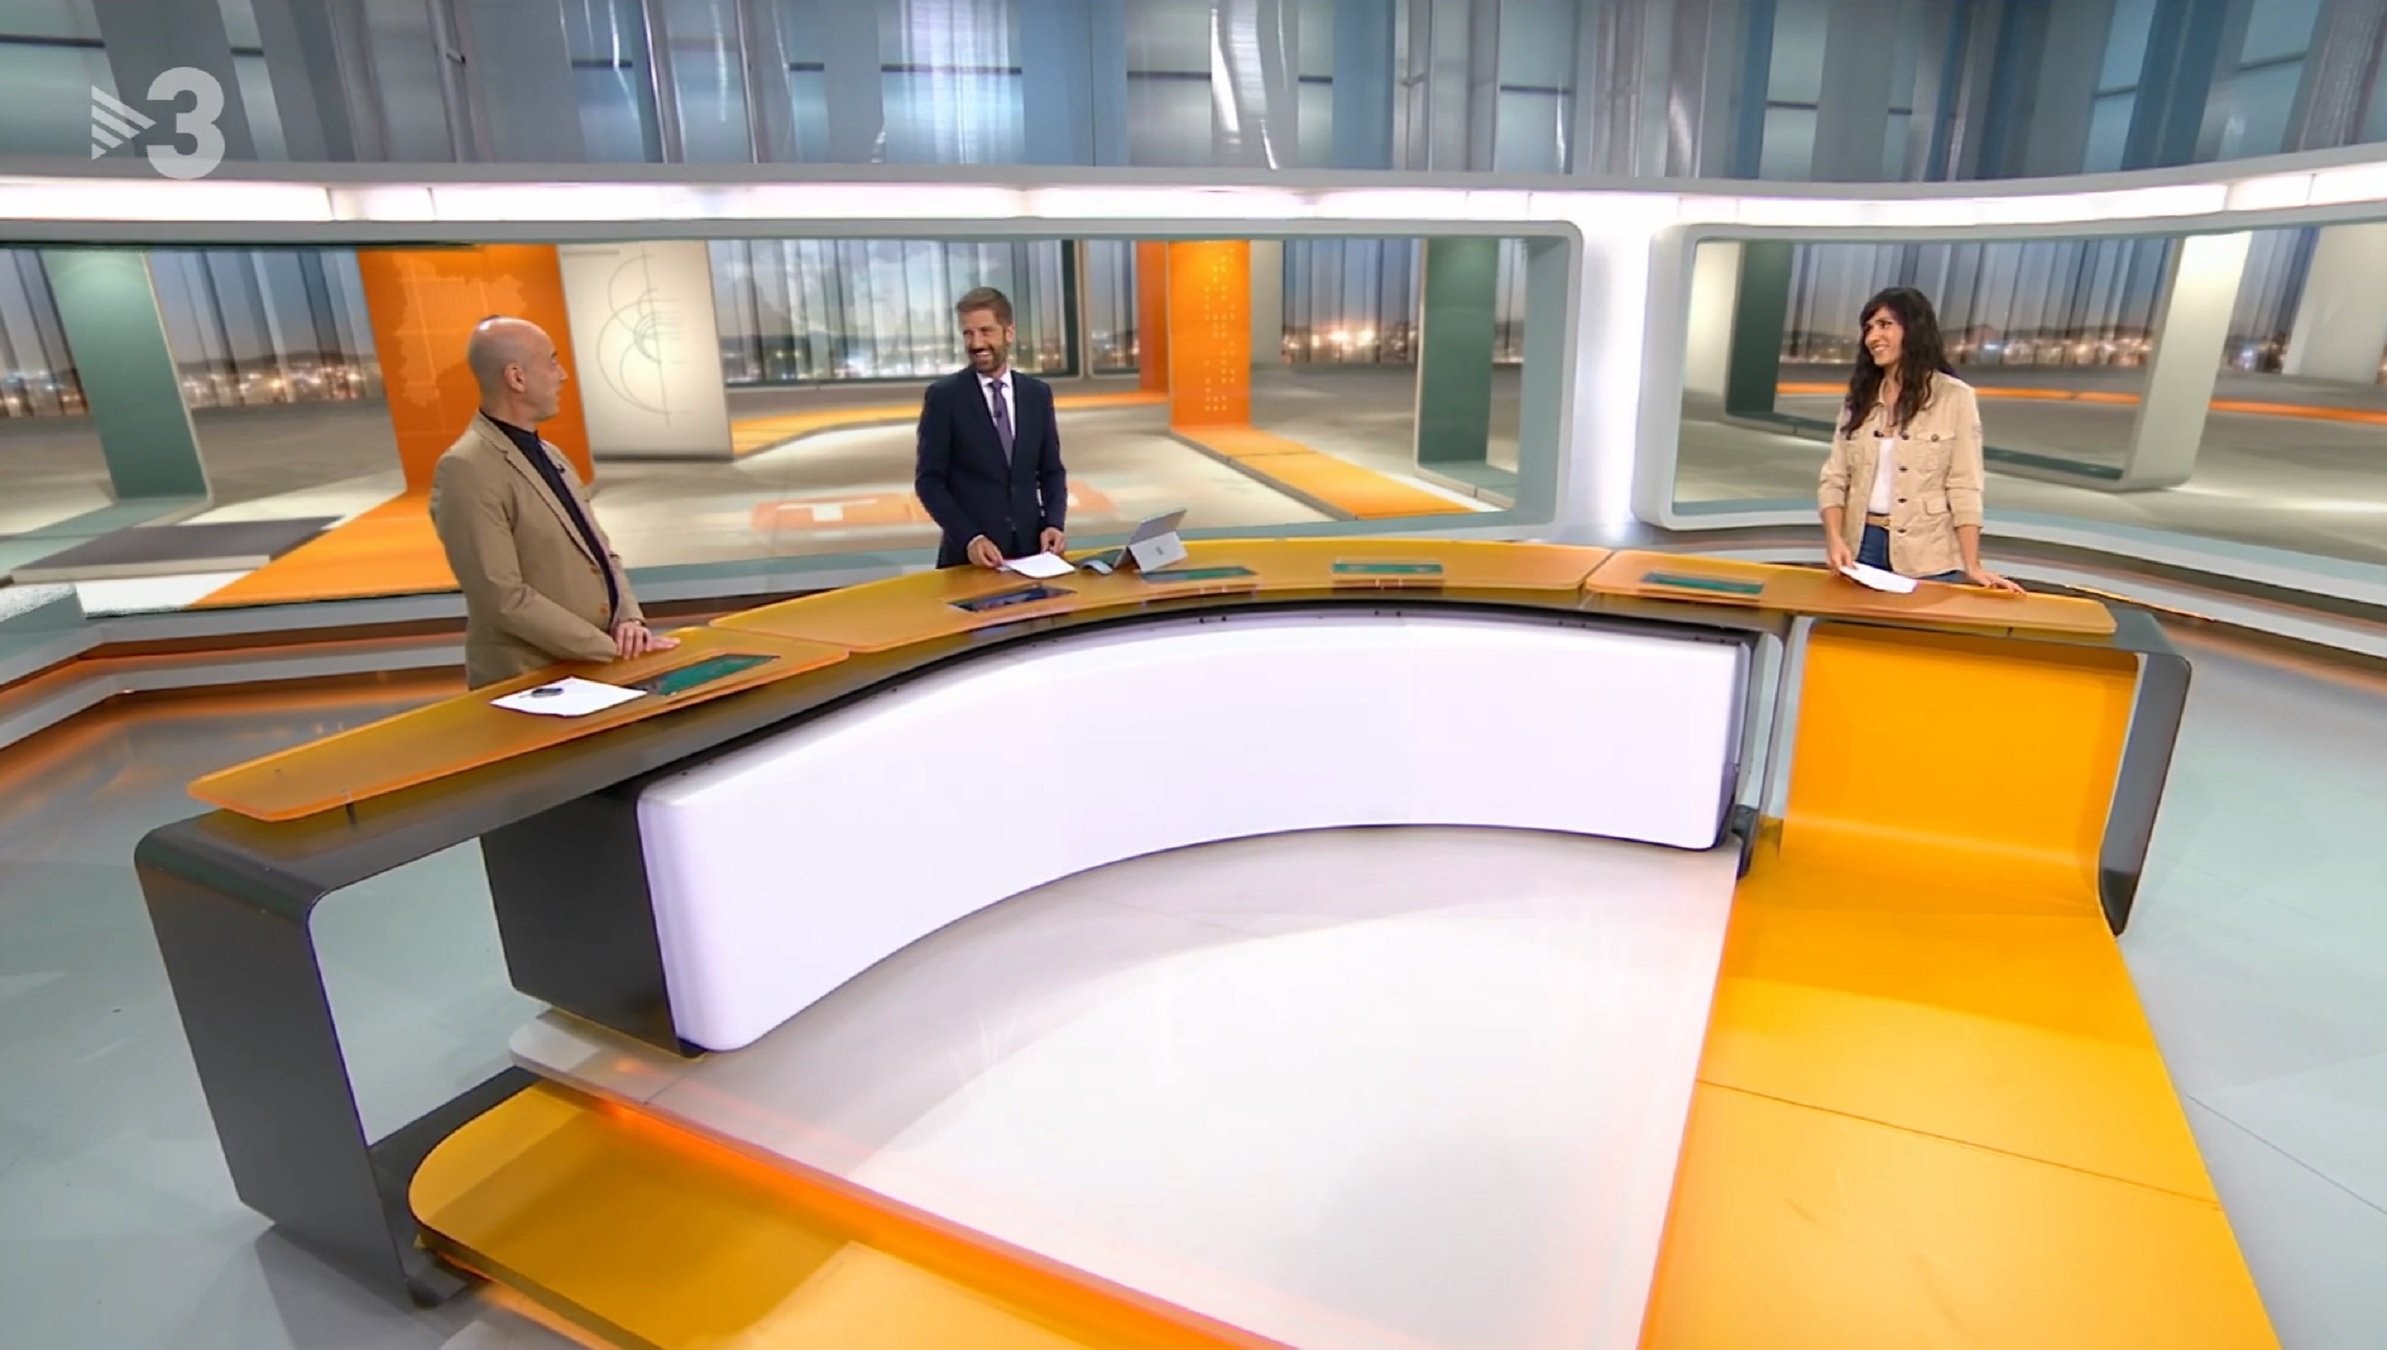 Un famós presentador deixa la Generalitat i torna a TV3: "No soc de cap partit"